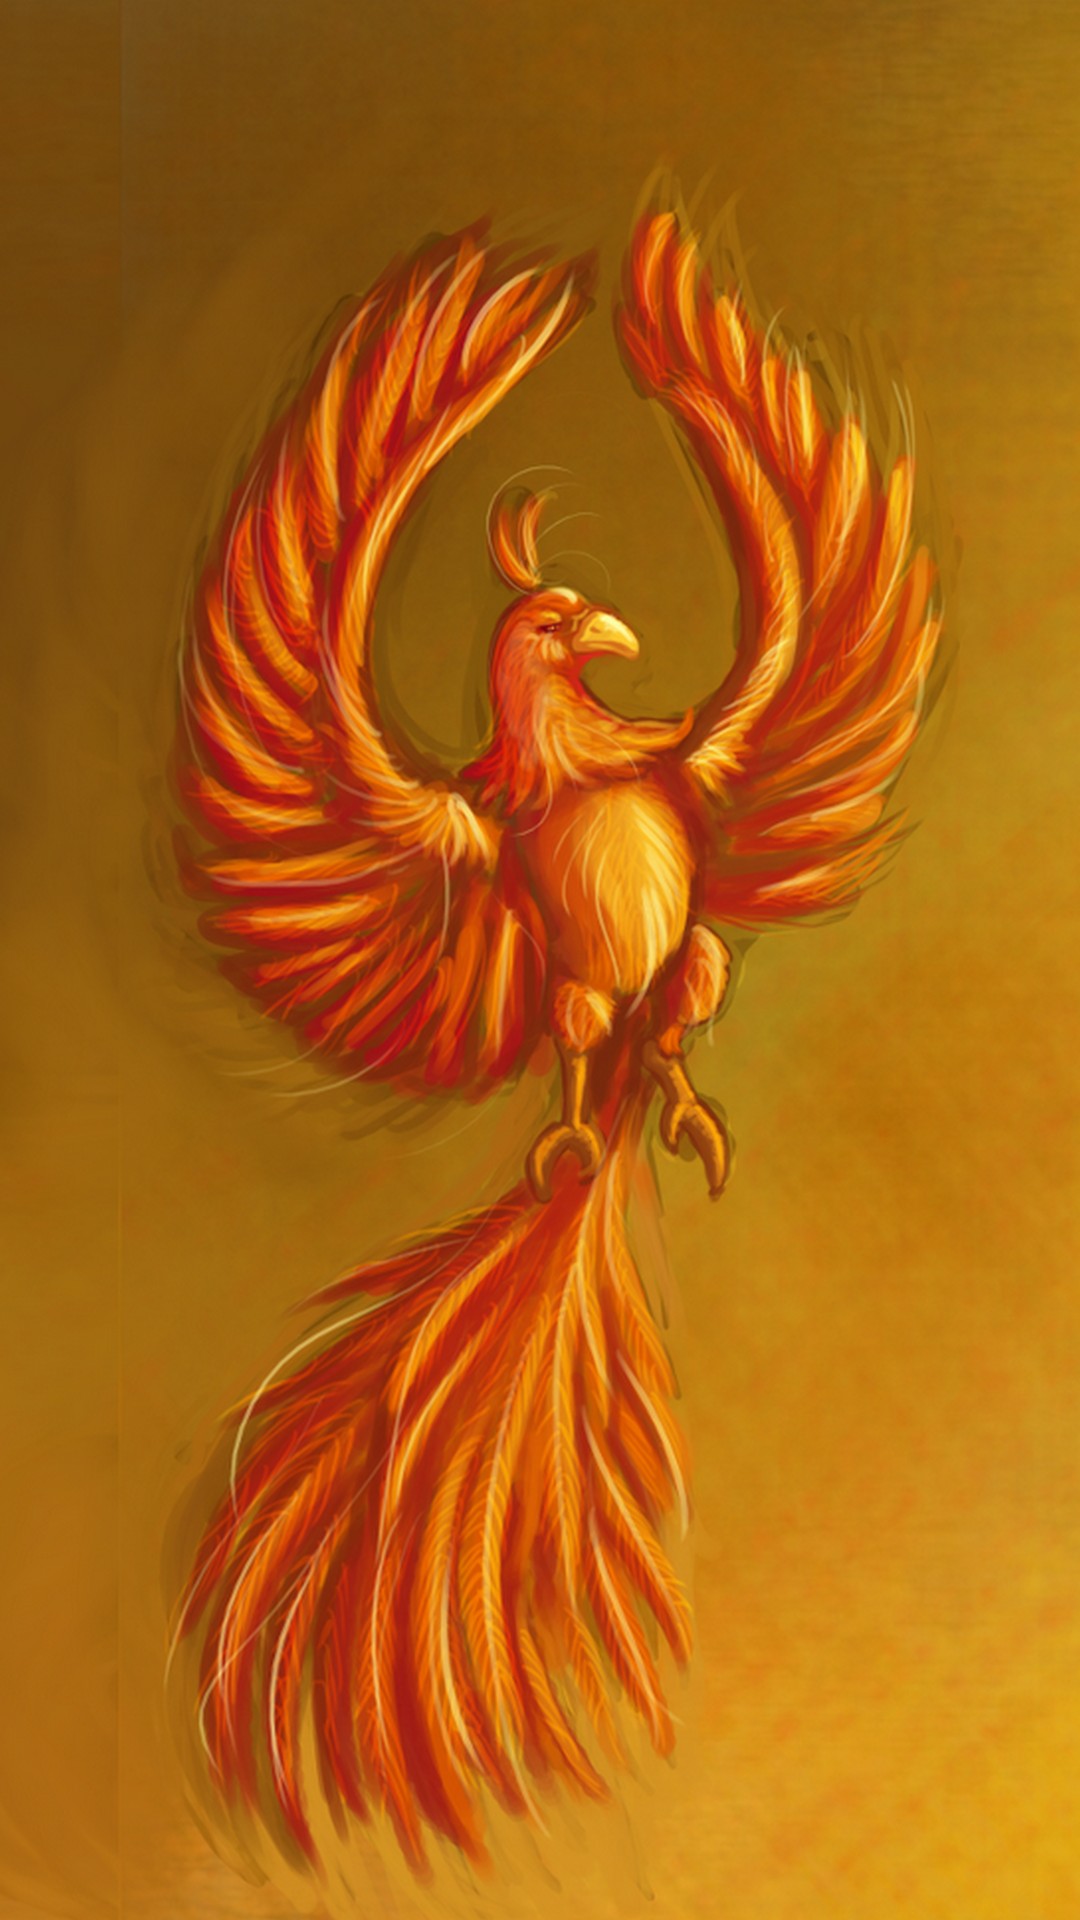 Golden Phoenix Bird Wallpapers